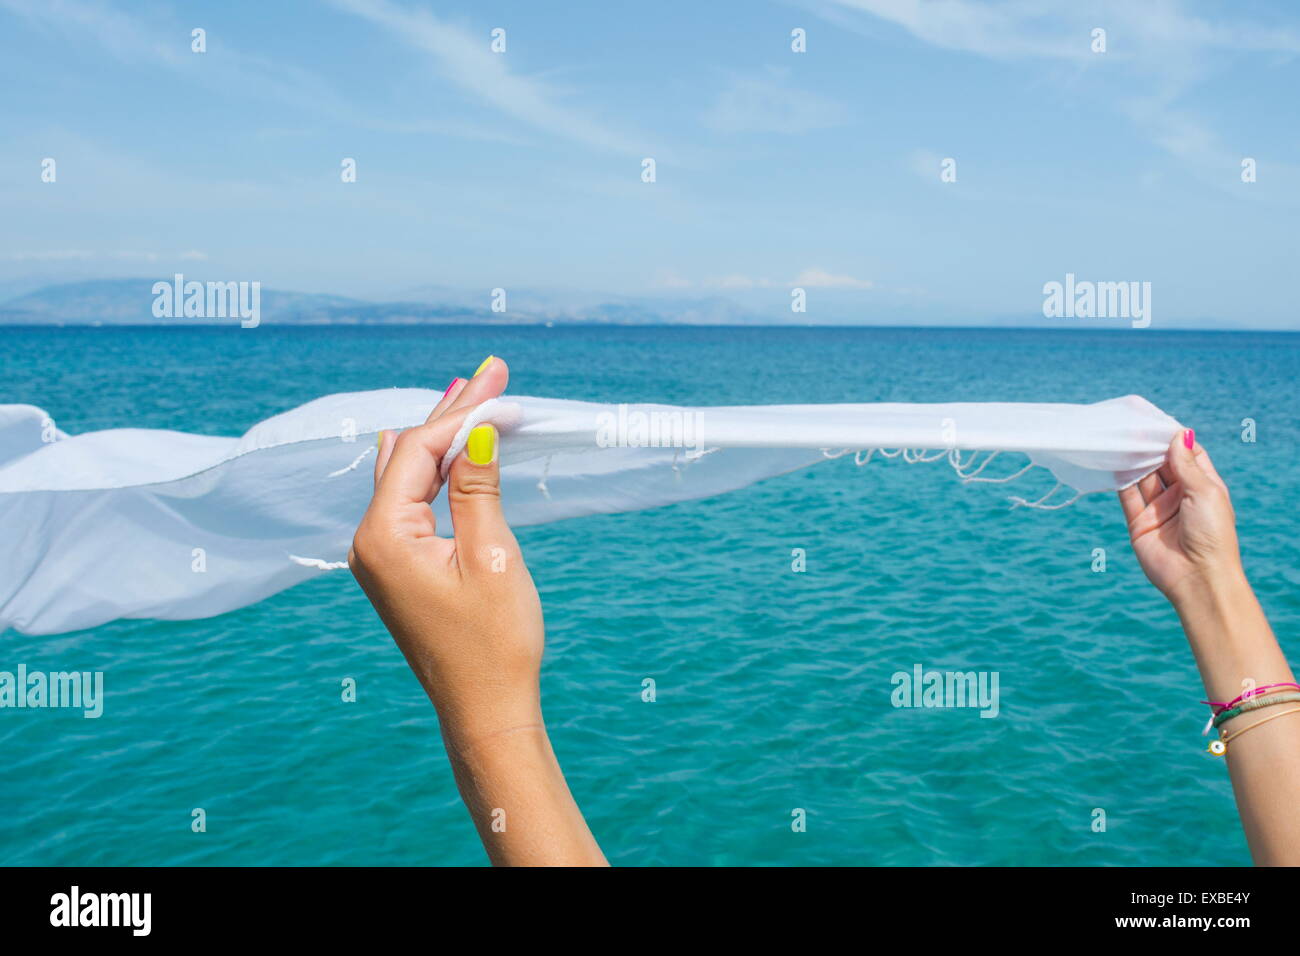 Pañuelo blanco ondeando en el viento del mar Foto de stock